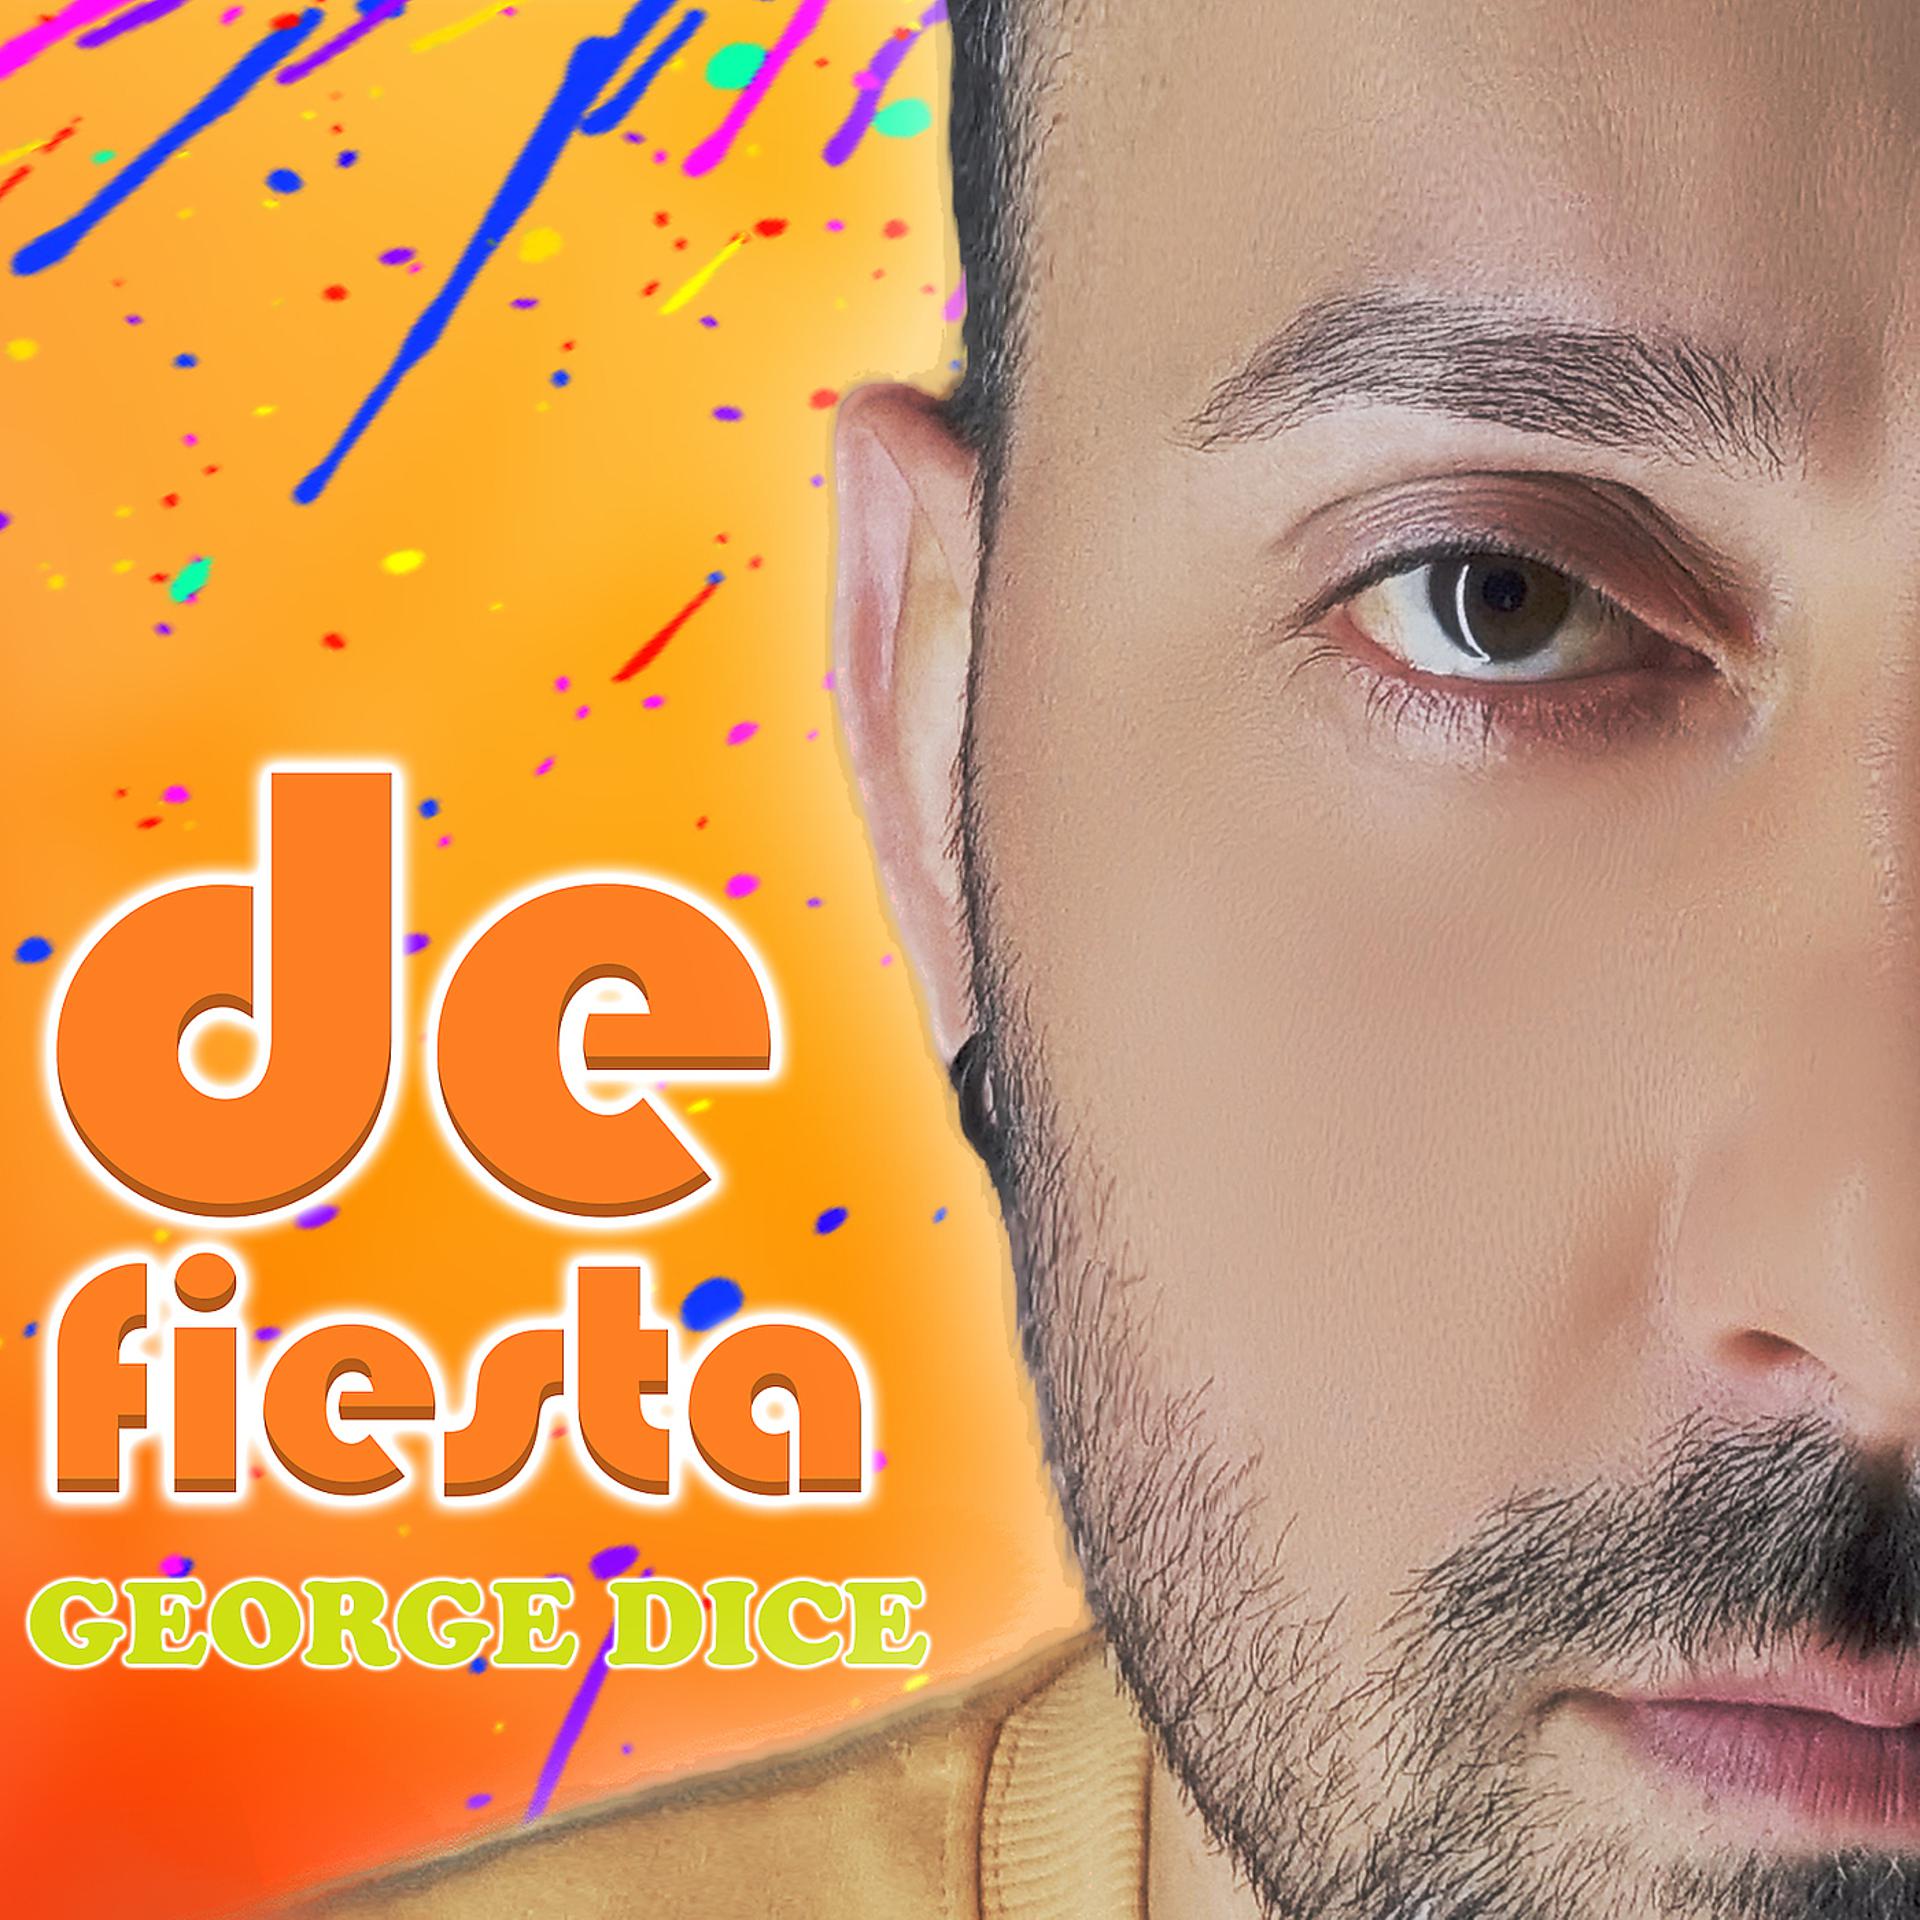 Постер альбома De Fiesta